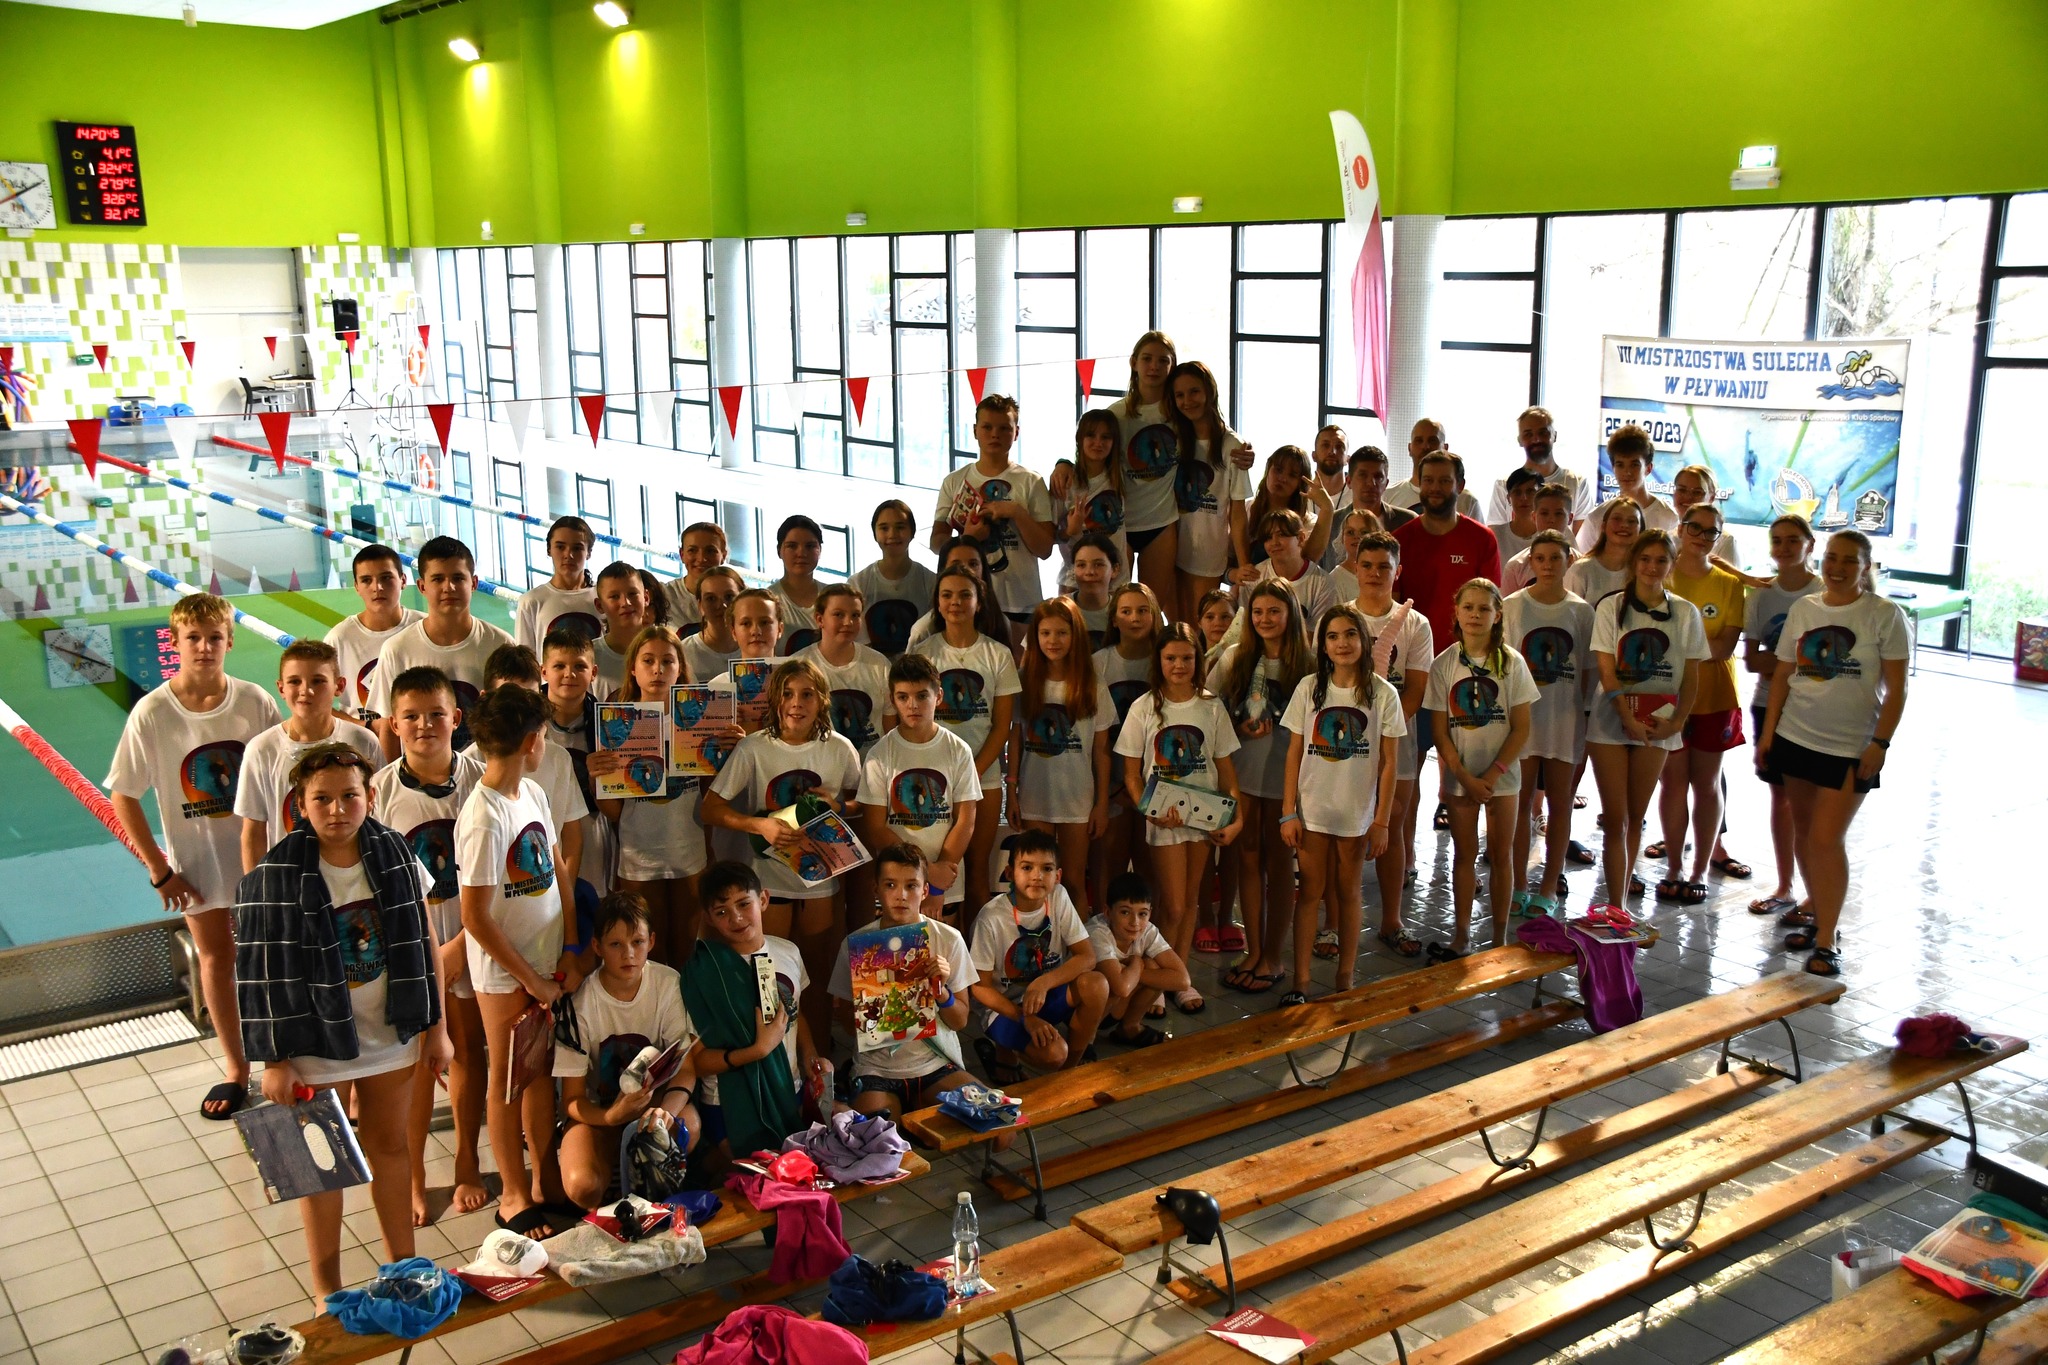 Rekordowa frekwencja podczas pływackich mistrzostw Sulecha